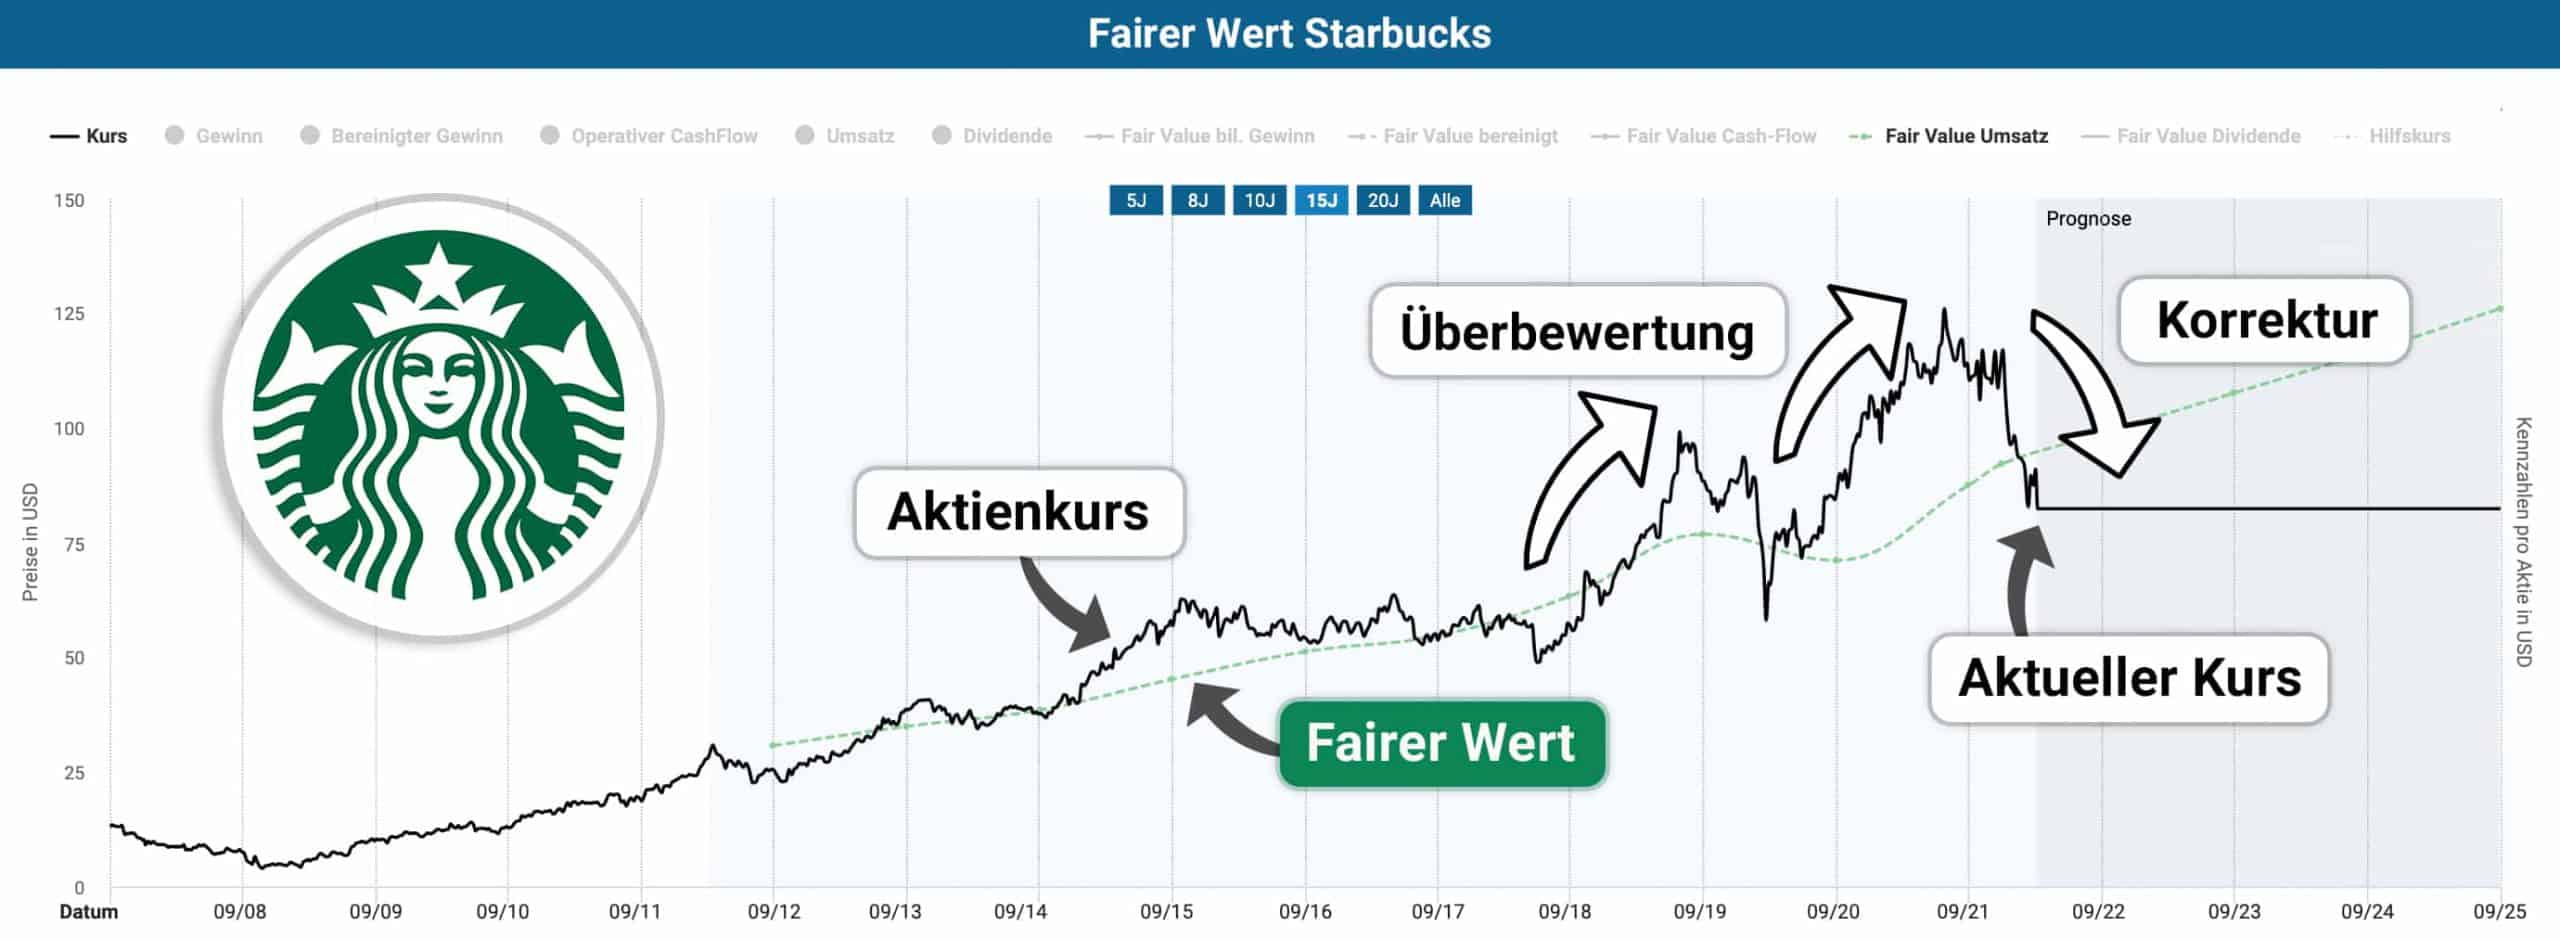 Fairer Wert der Starbucks Aktie und deren Kursverlauf von 2012 bis heute